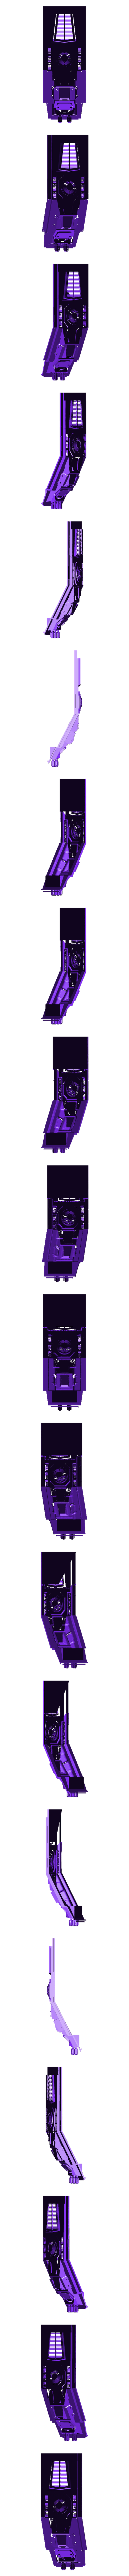 Cockpit hollw.stl Download free STL file Blast Eagle Transport • 3D printer design, IronMaster